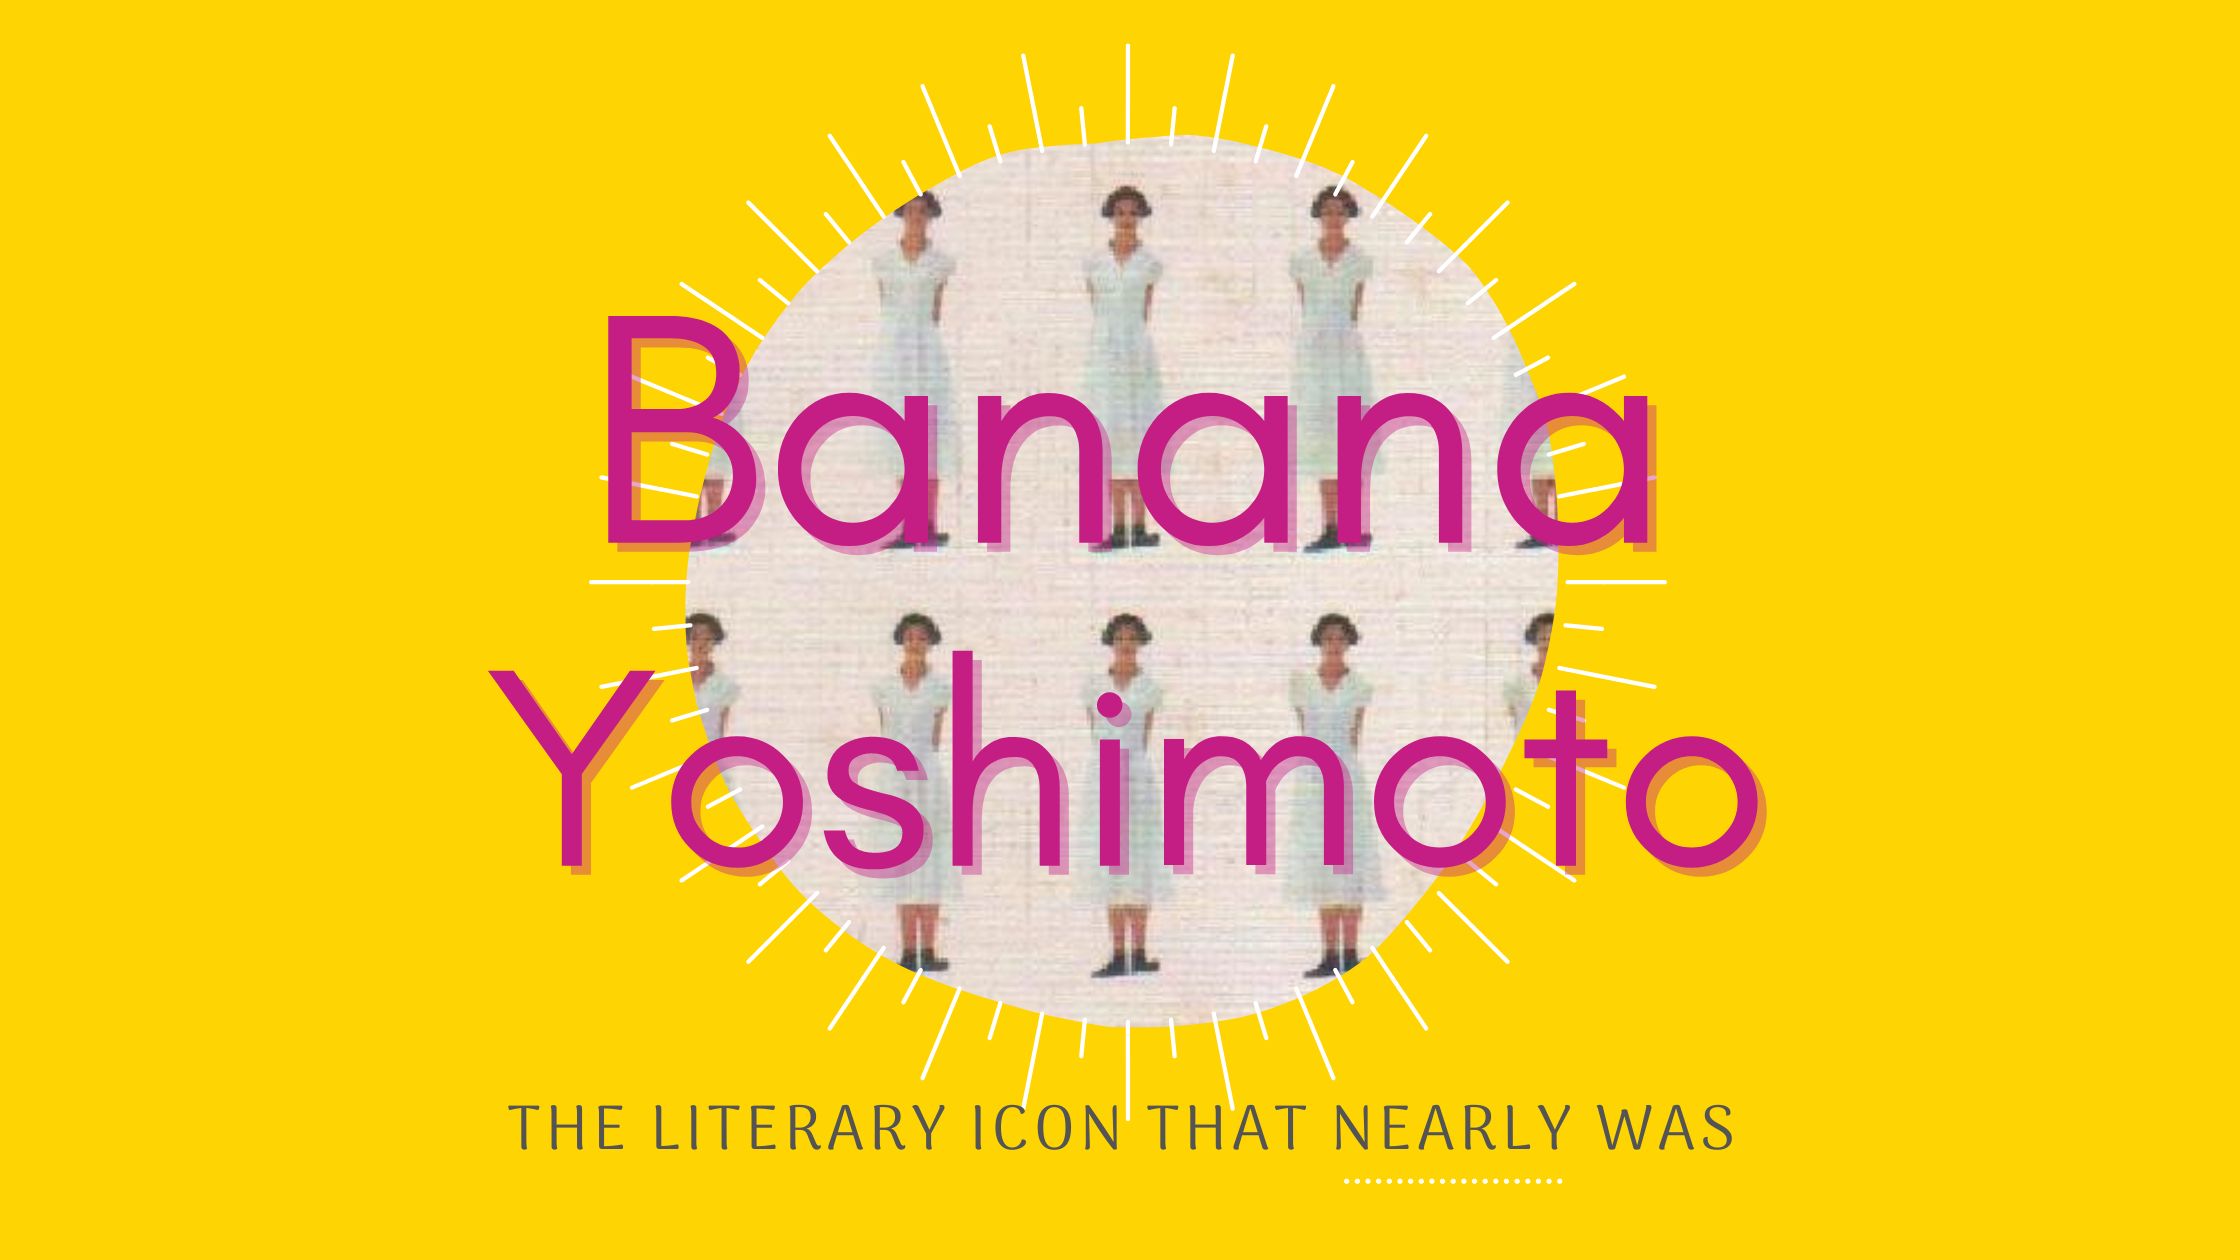 banana yoshimoto new book